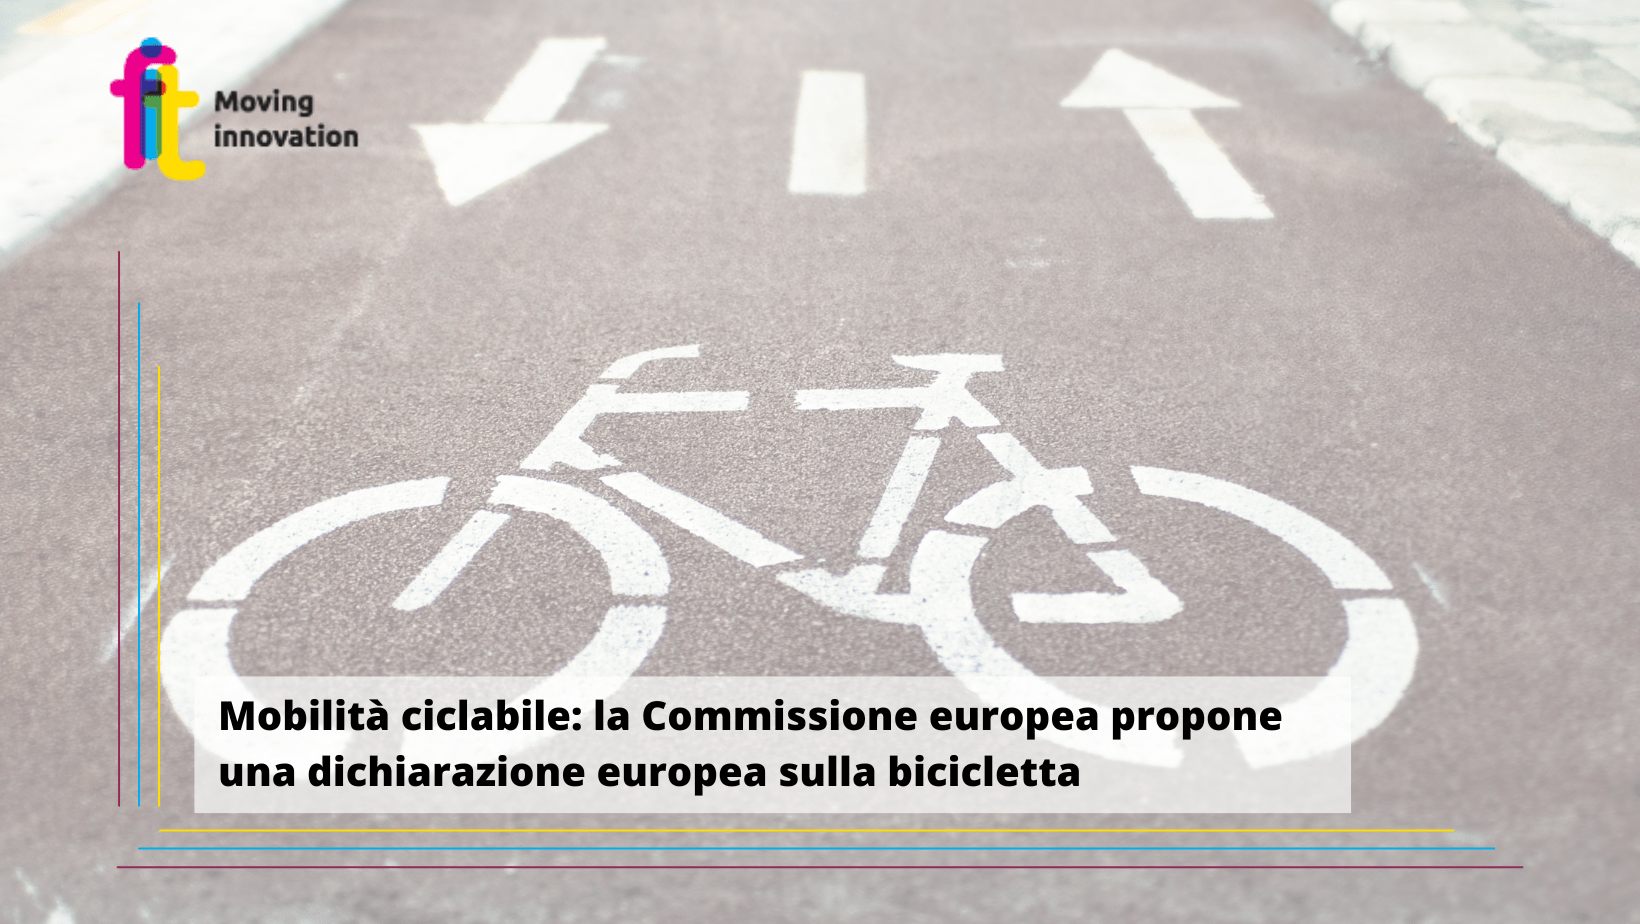 Mobilità ciclabile: la Commissione europea proporrà entro l’estate una dichiarazione europea sulla bicicletta